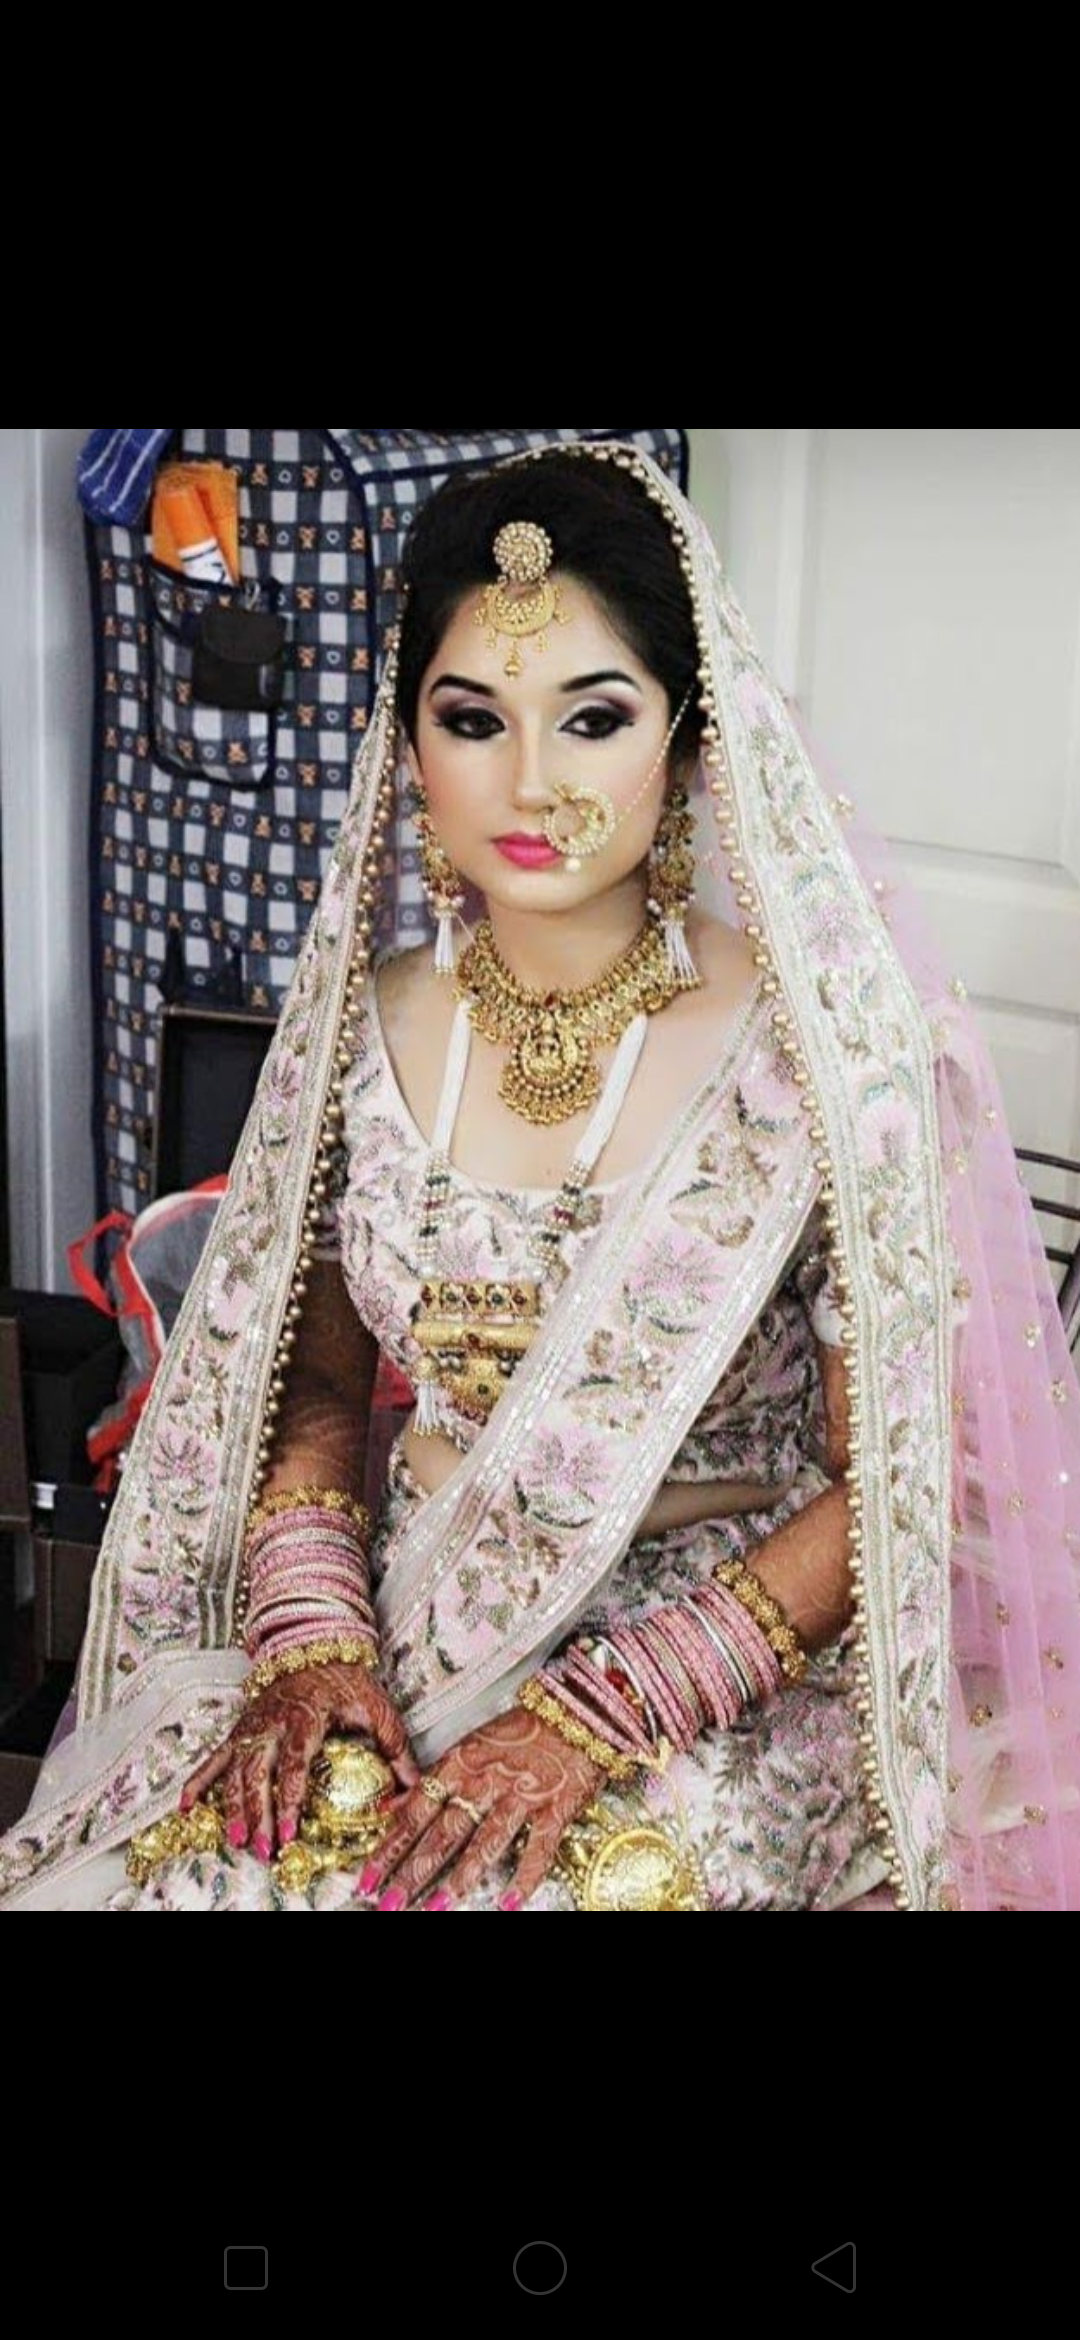 kiran-gupta-makeovers-makeup-artist-mumbai